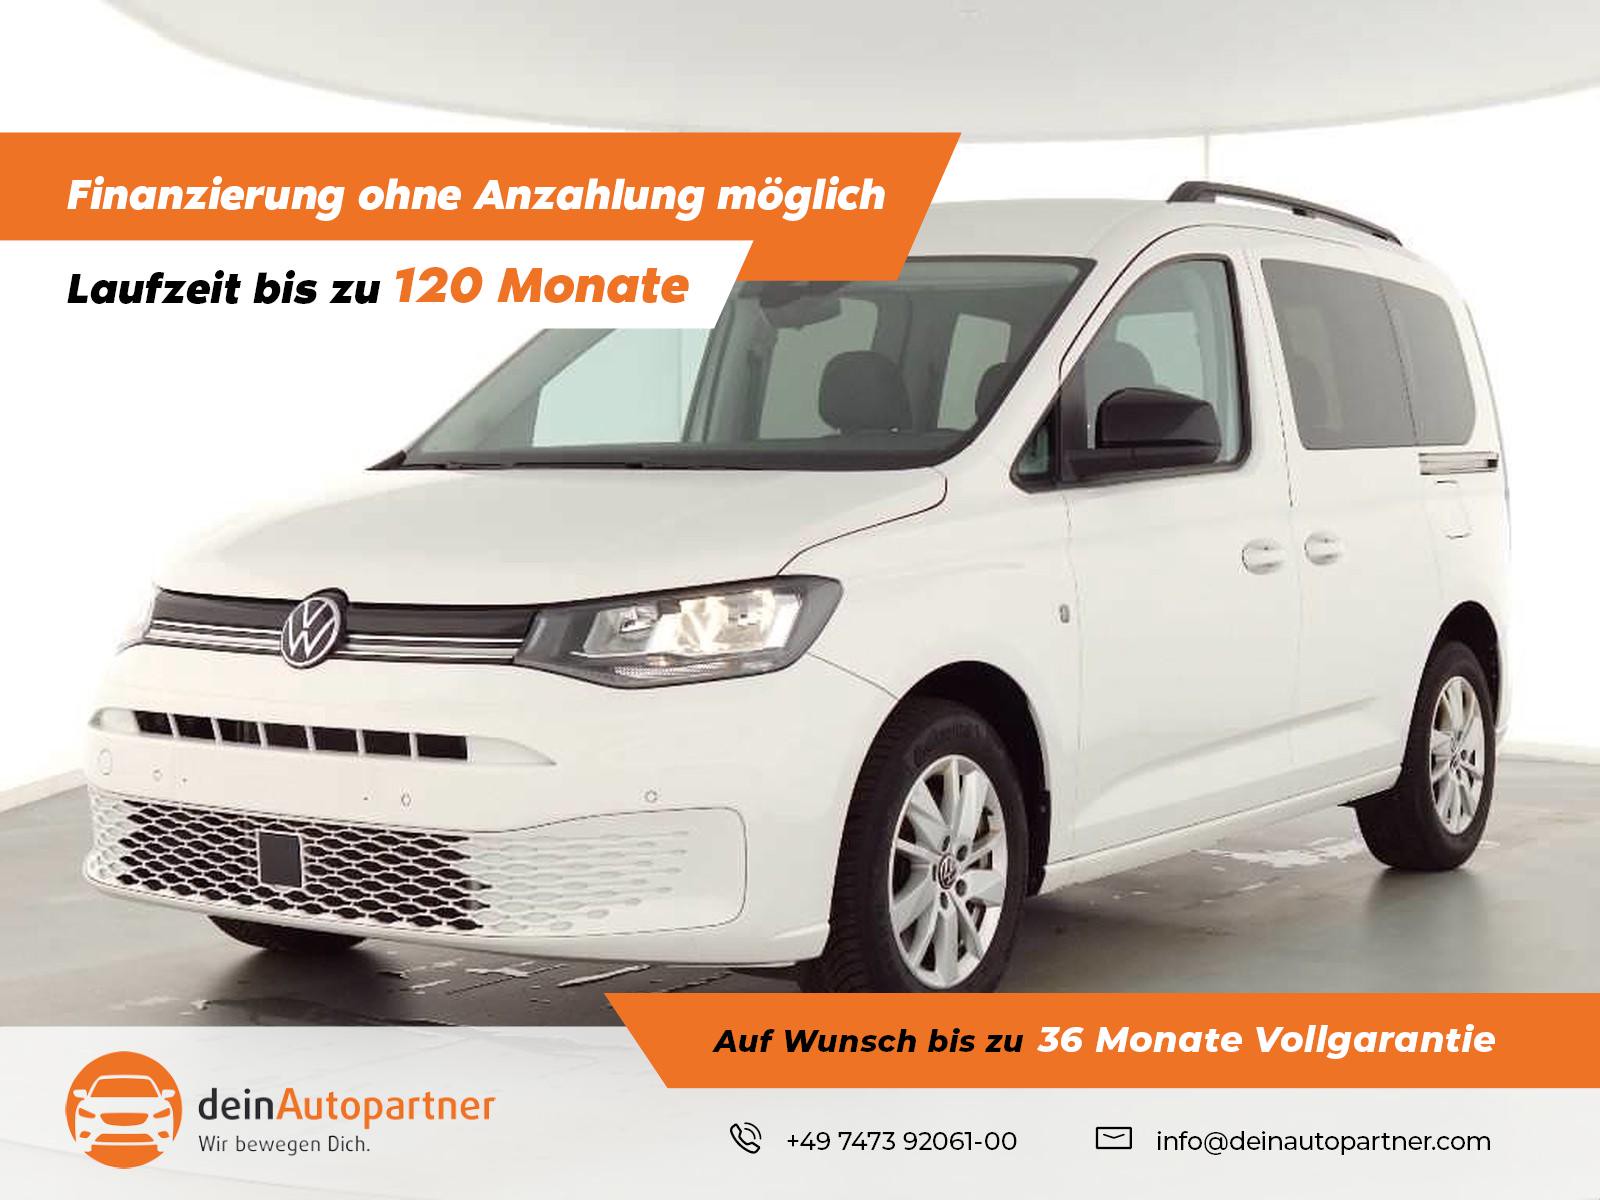 Volkswagen Caddy Life 2.0 TDI gebraucht kaufen in Mössingen Preis 28950 eur  - Int.Nr.: 1841